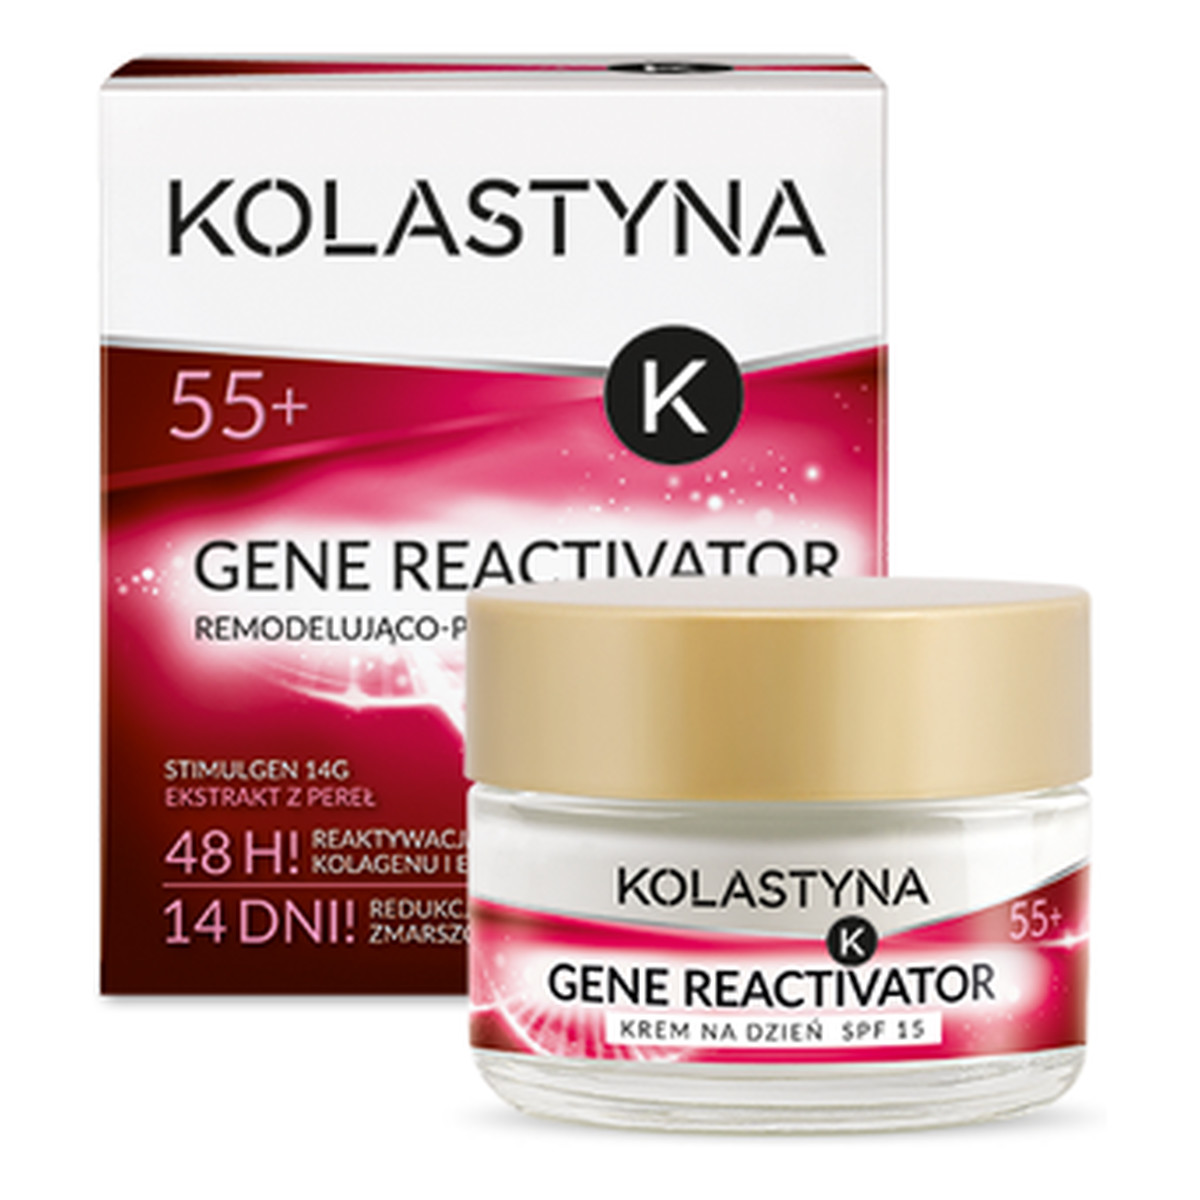 Kolastyna Gene Reactivator 55+ Remodelująco - Przeciwzmarszczkowy Krem Do Twarzy Na Dzień 50ml